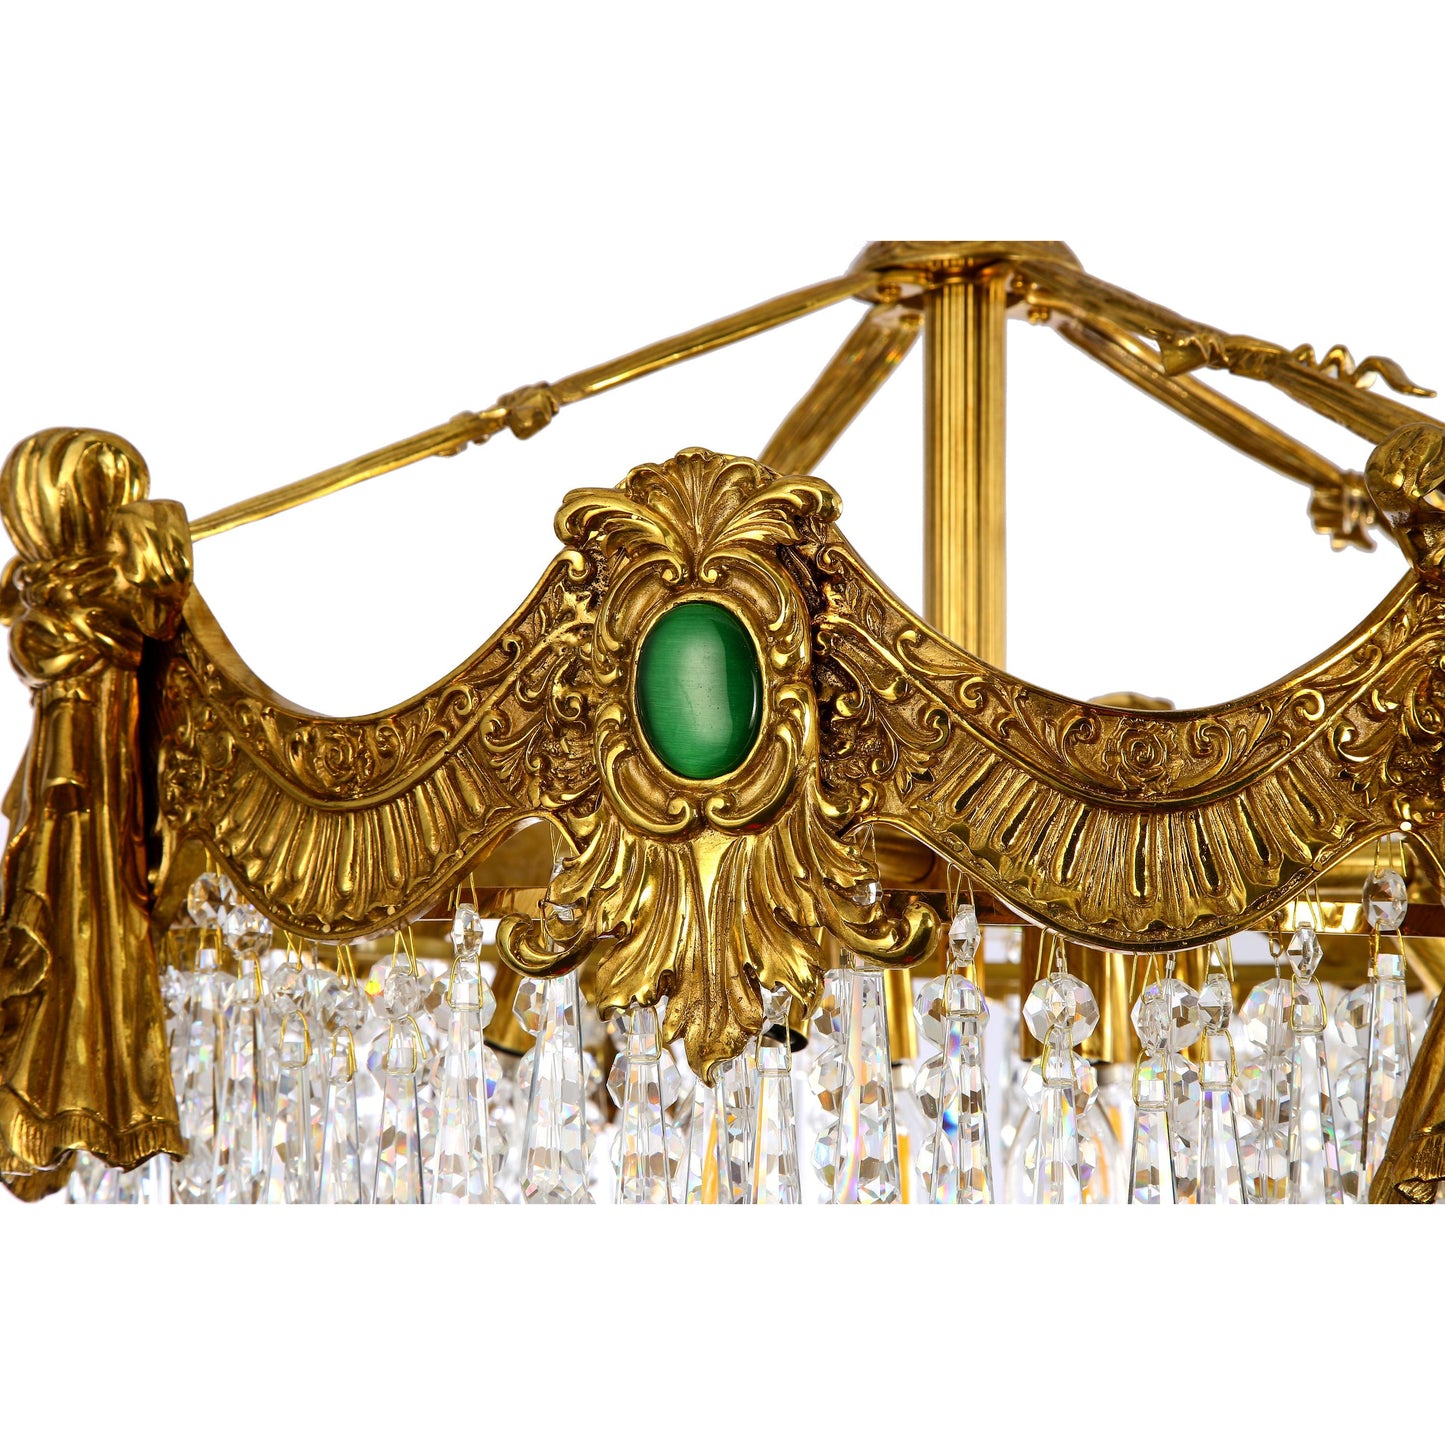 Candelabro de canasta estilo imperio francés con detalles en verde